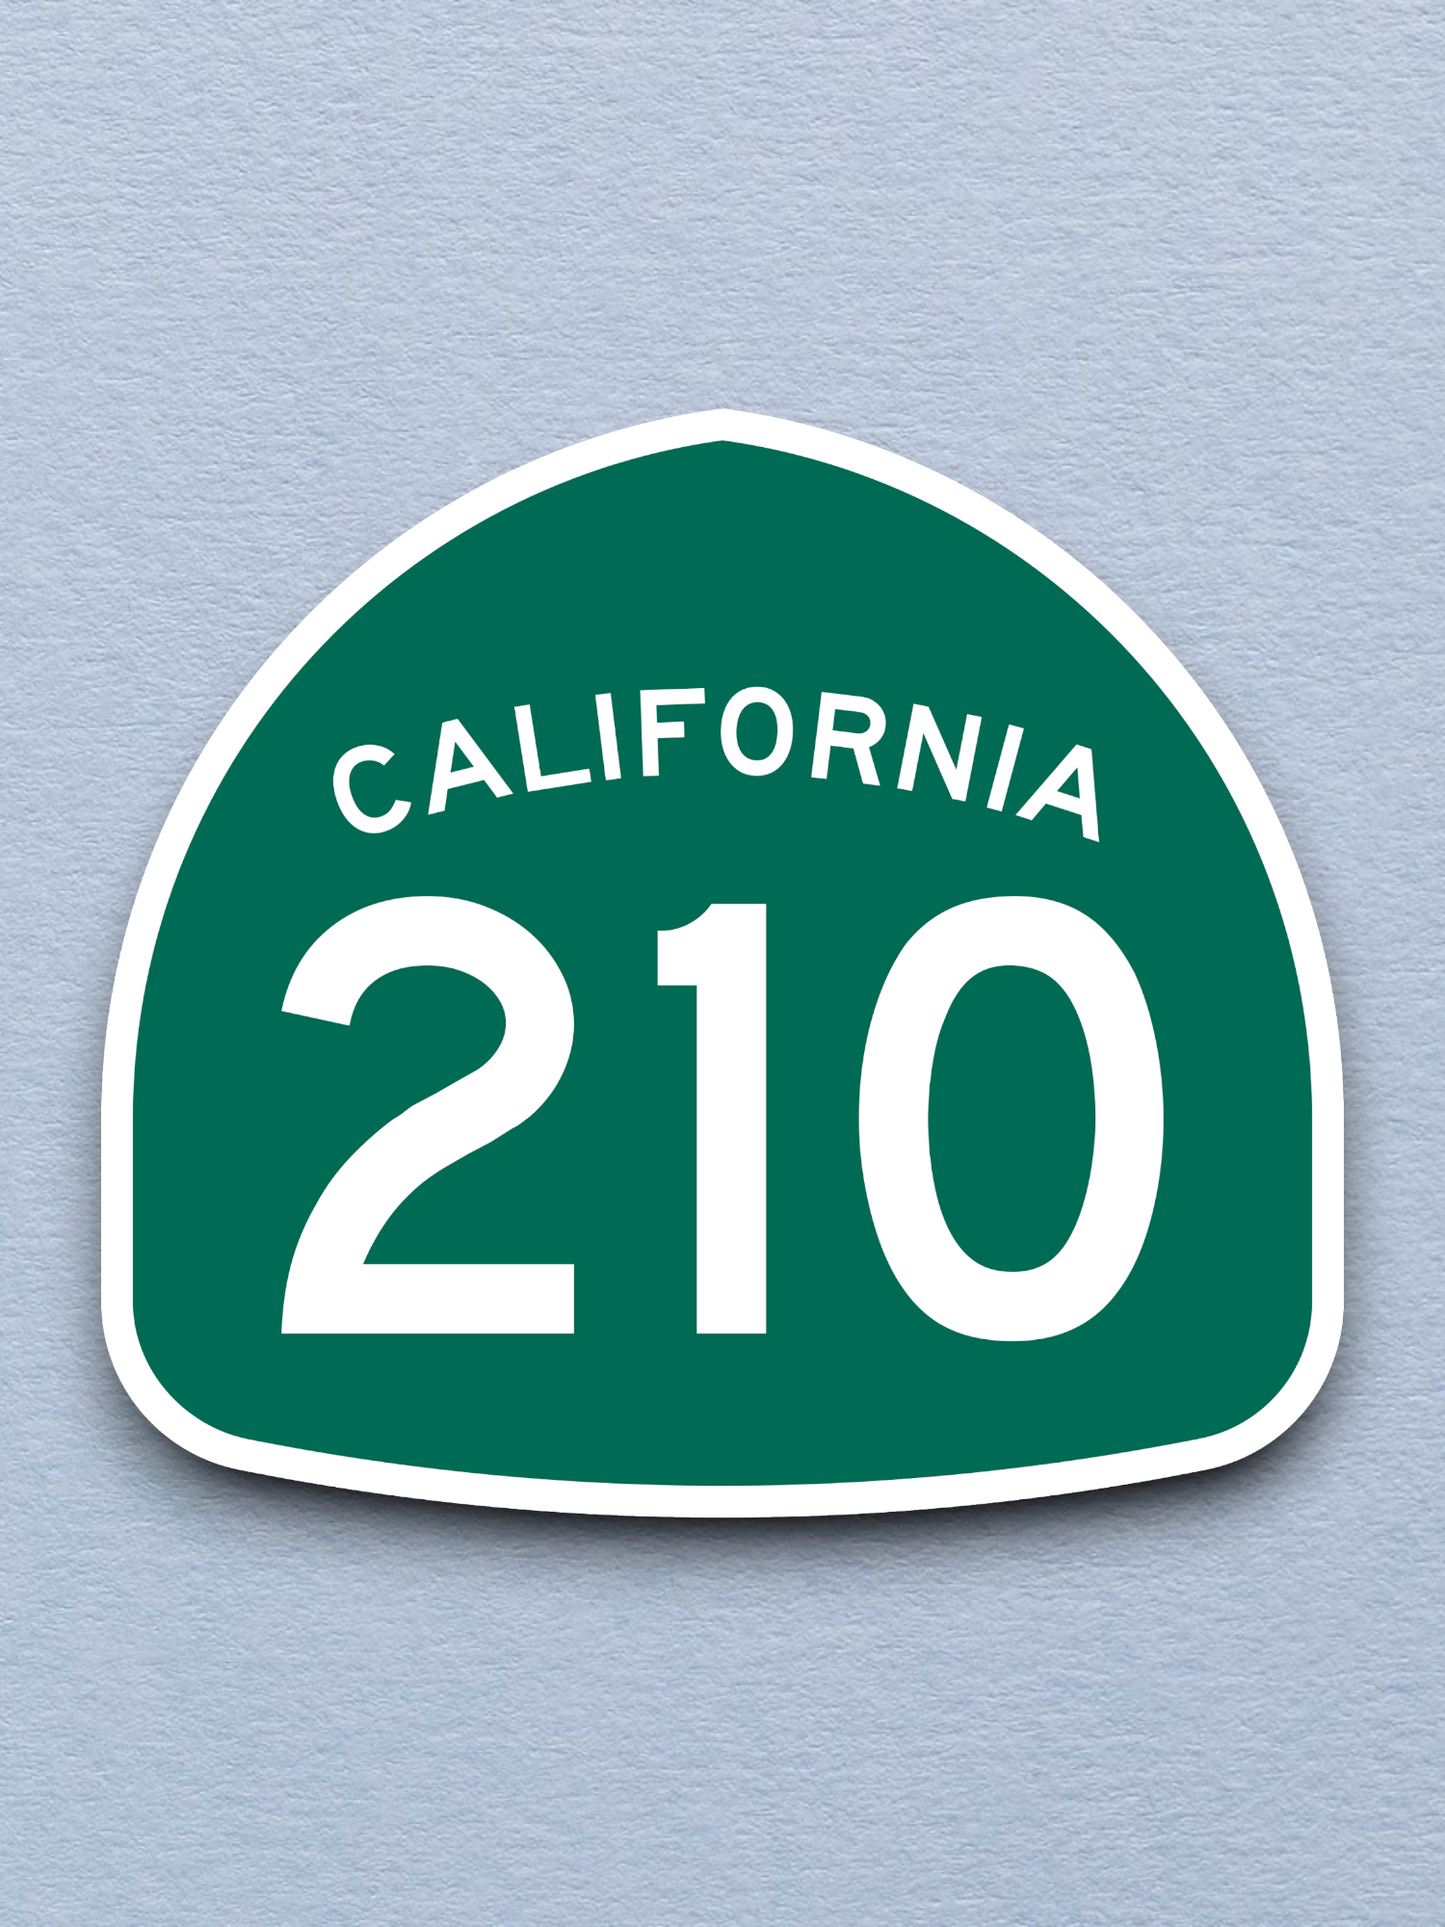 California State Route 210 Sticker